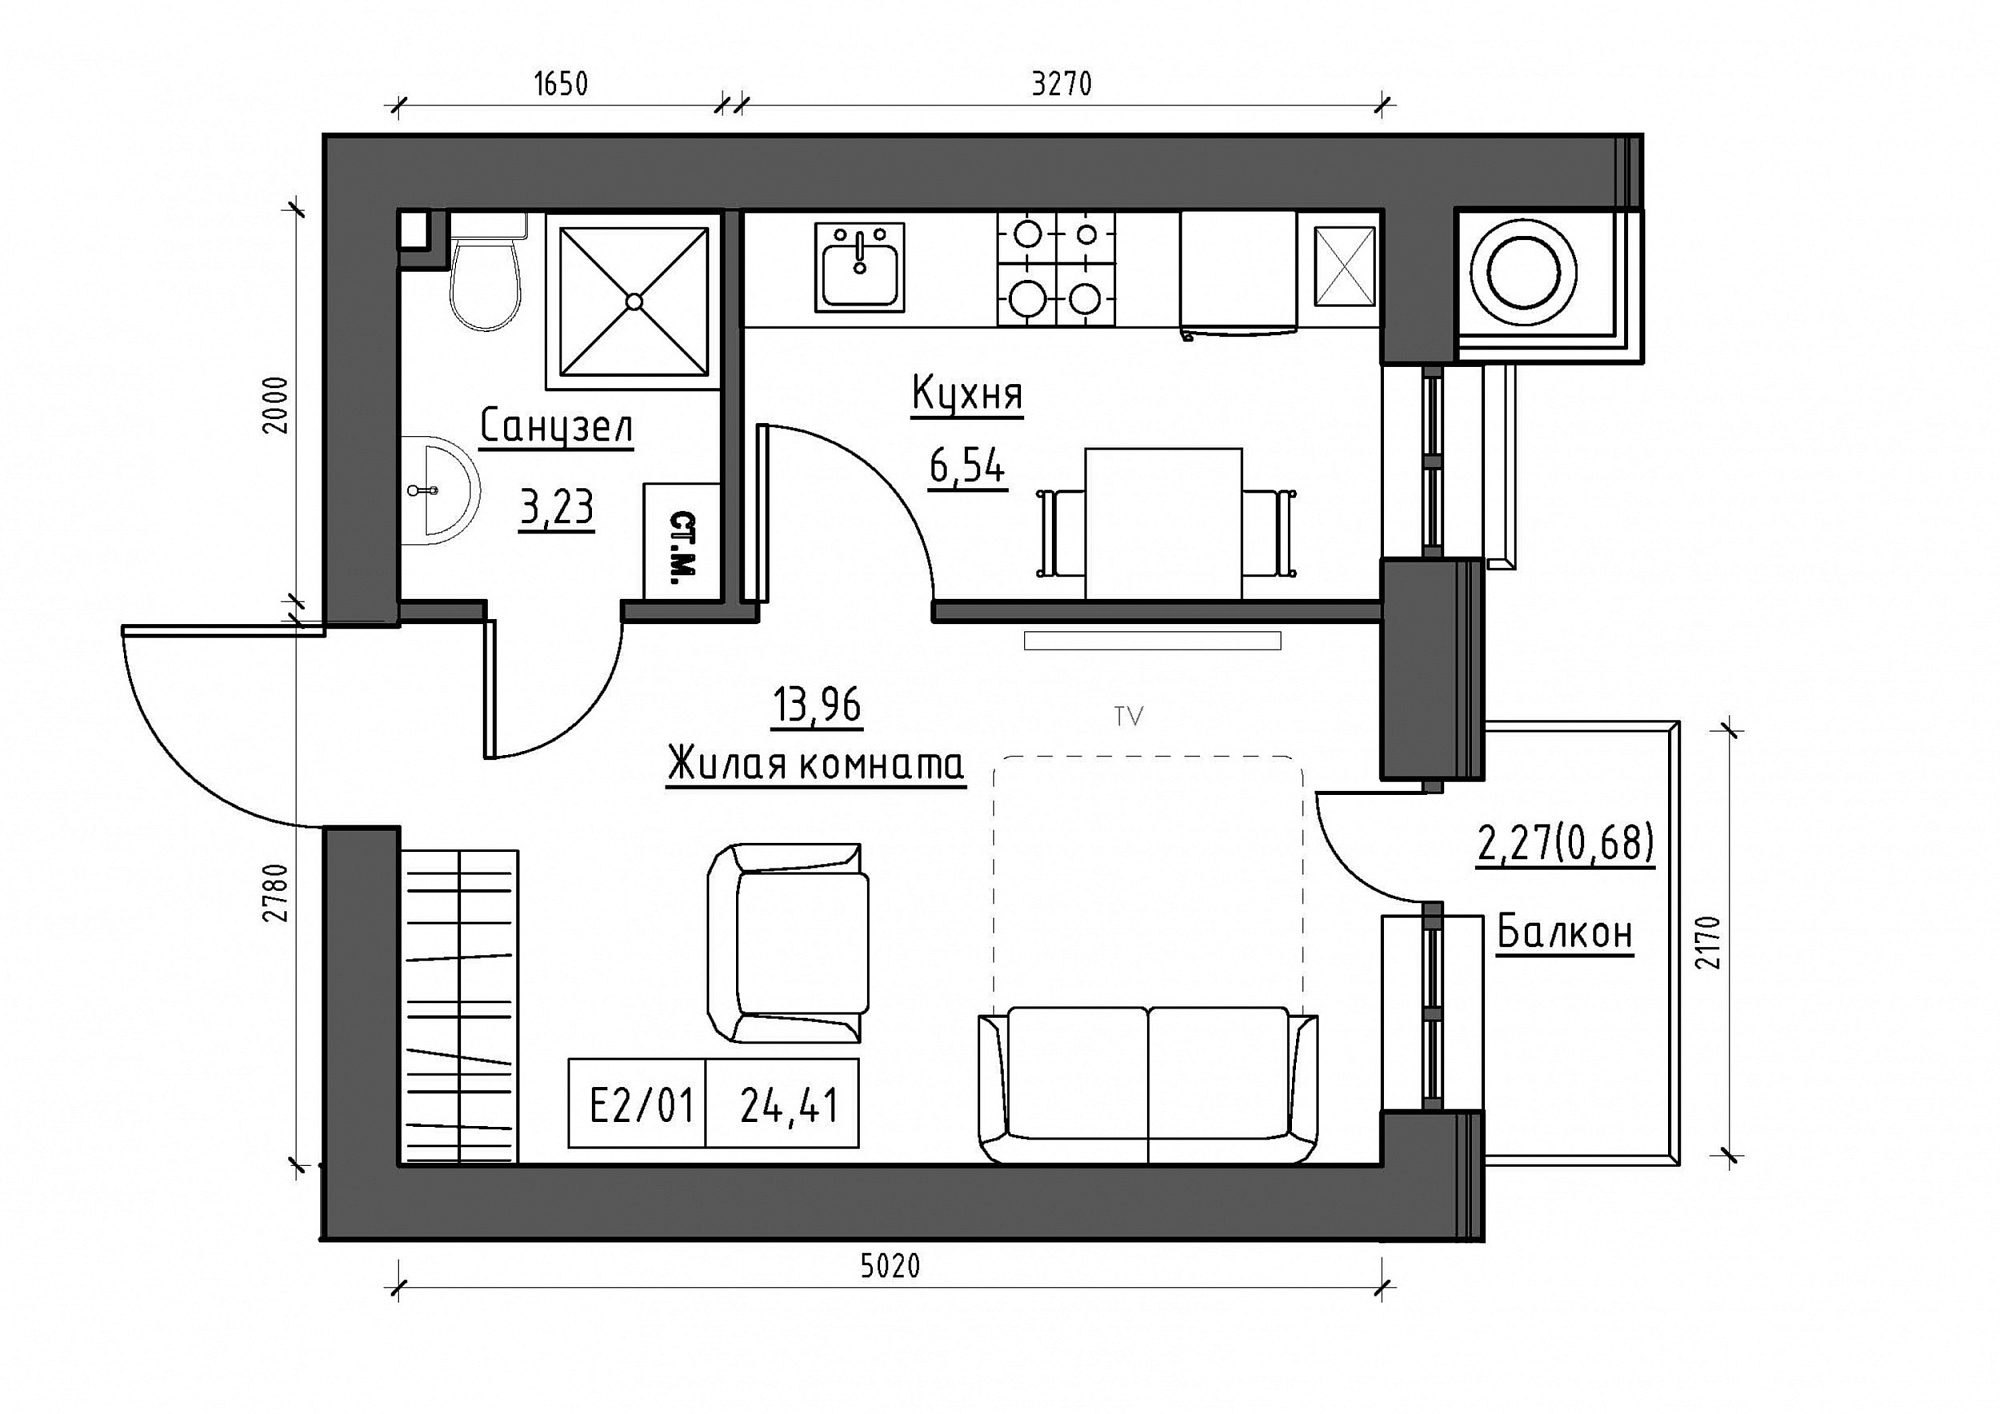 Планування 1-к квартира площею 24.41м2, KS-011-04/0007.